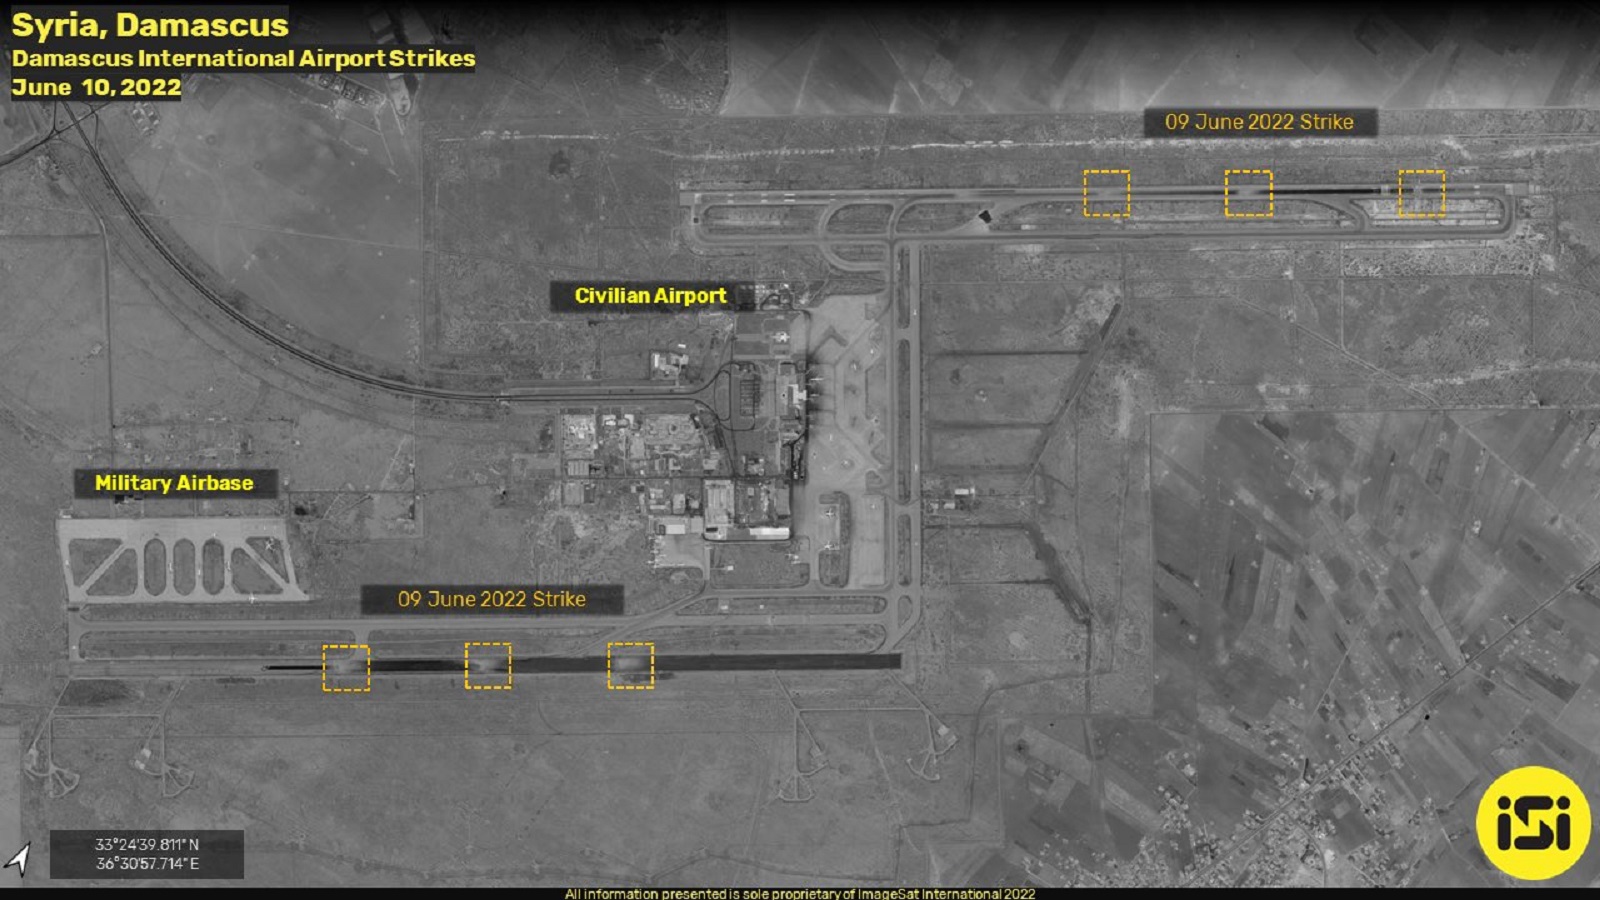 قصف مطار دمشق يغير قواعد اللعبة..الخطوة إسرائيلية والرسالة أميركية